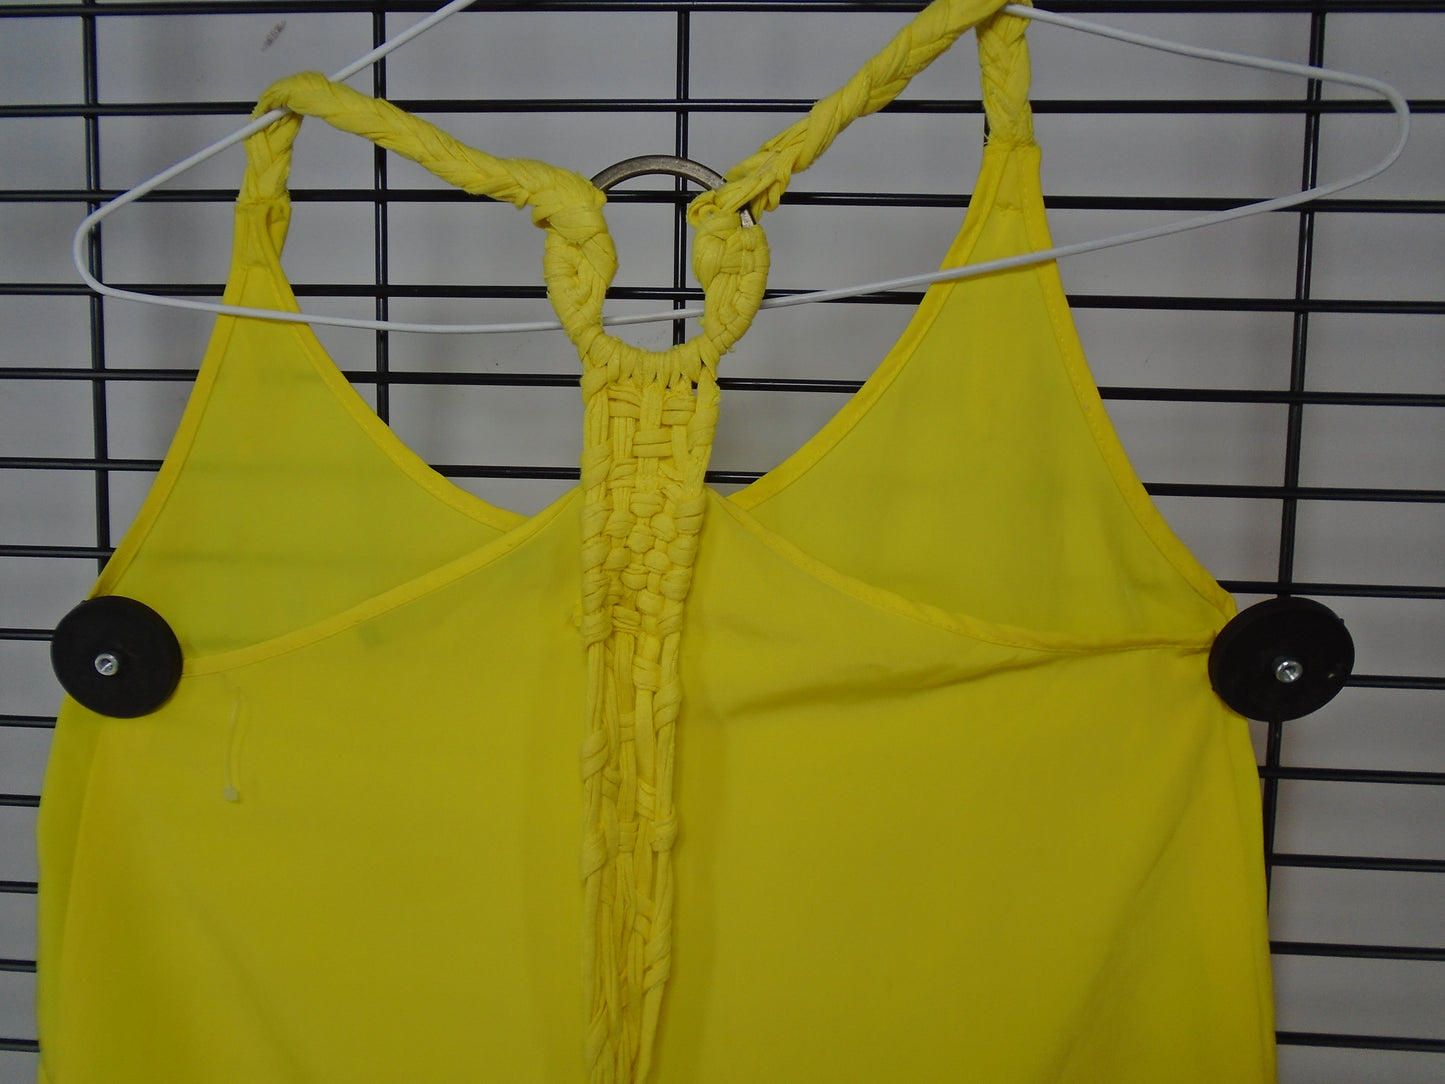 Women's Undershirt Zara. Yellow. XS. Used. Very good condition